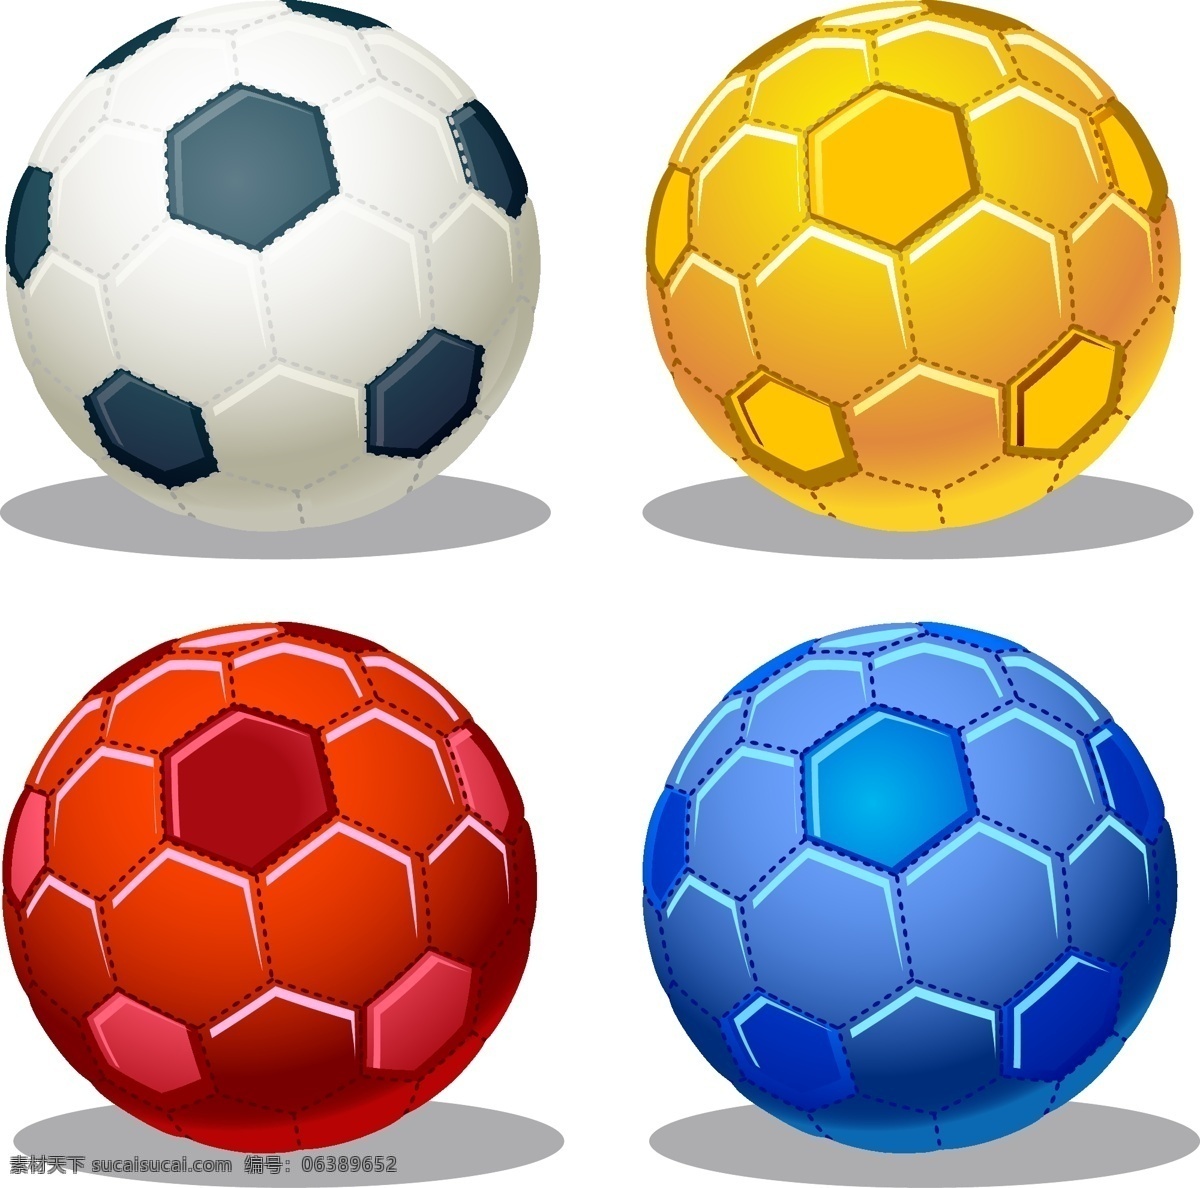 矢量足球素材 足球素材 矢量足球 足球 矢量素材